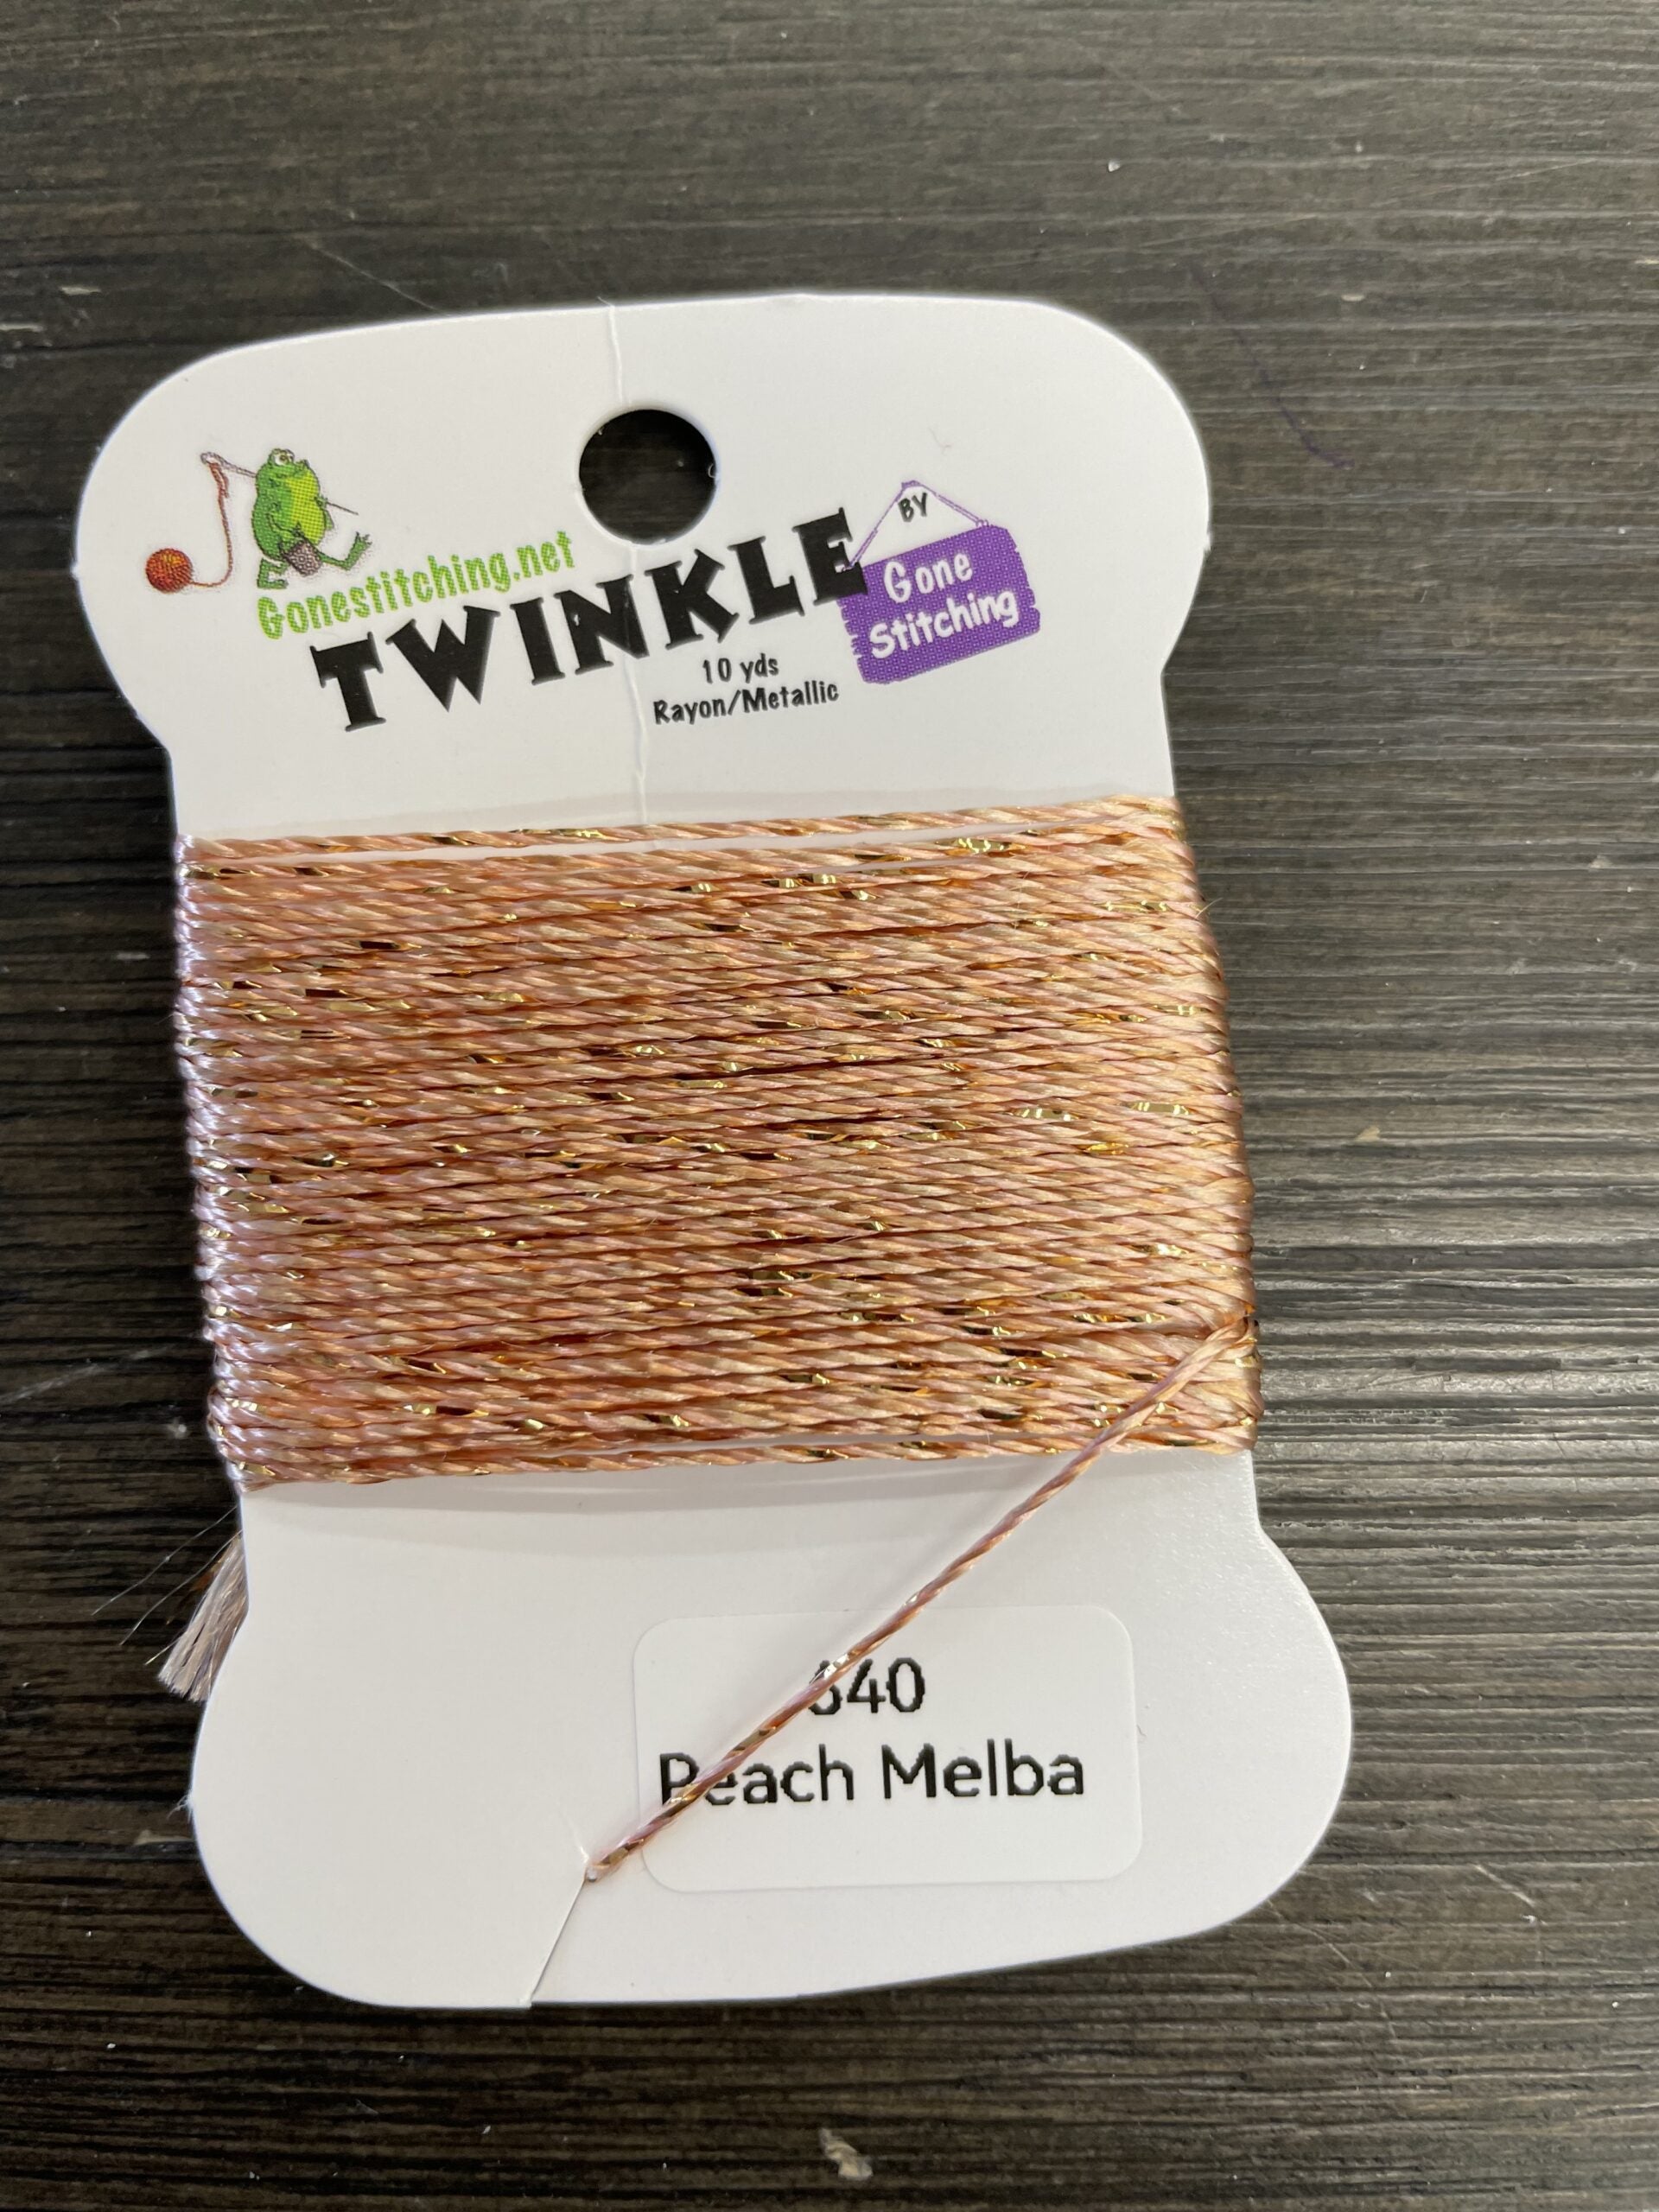 GS - Twinkle - 0640 - Peach Melba